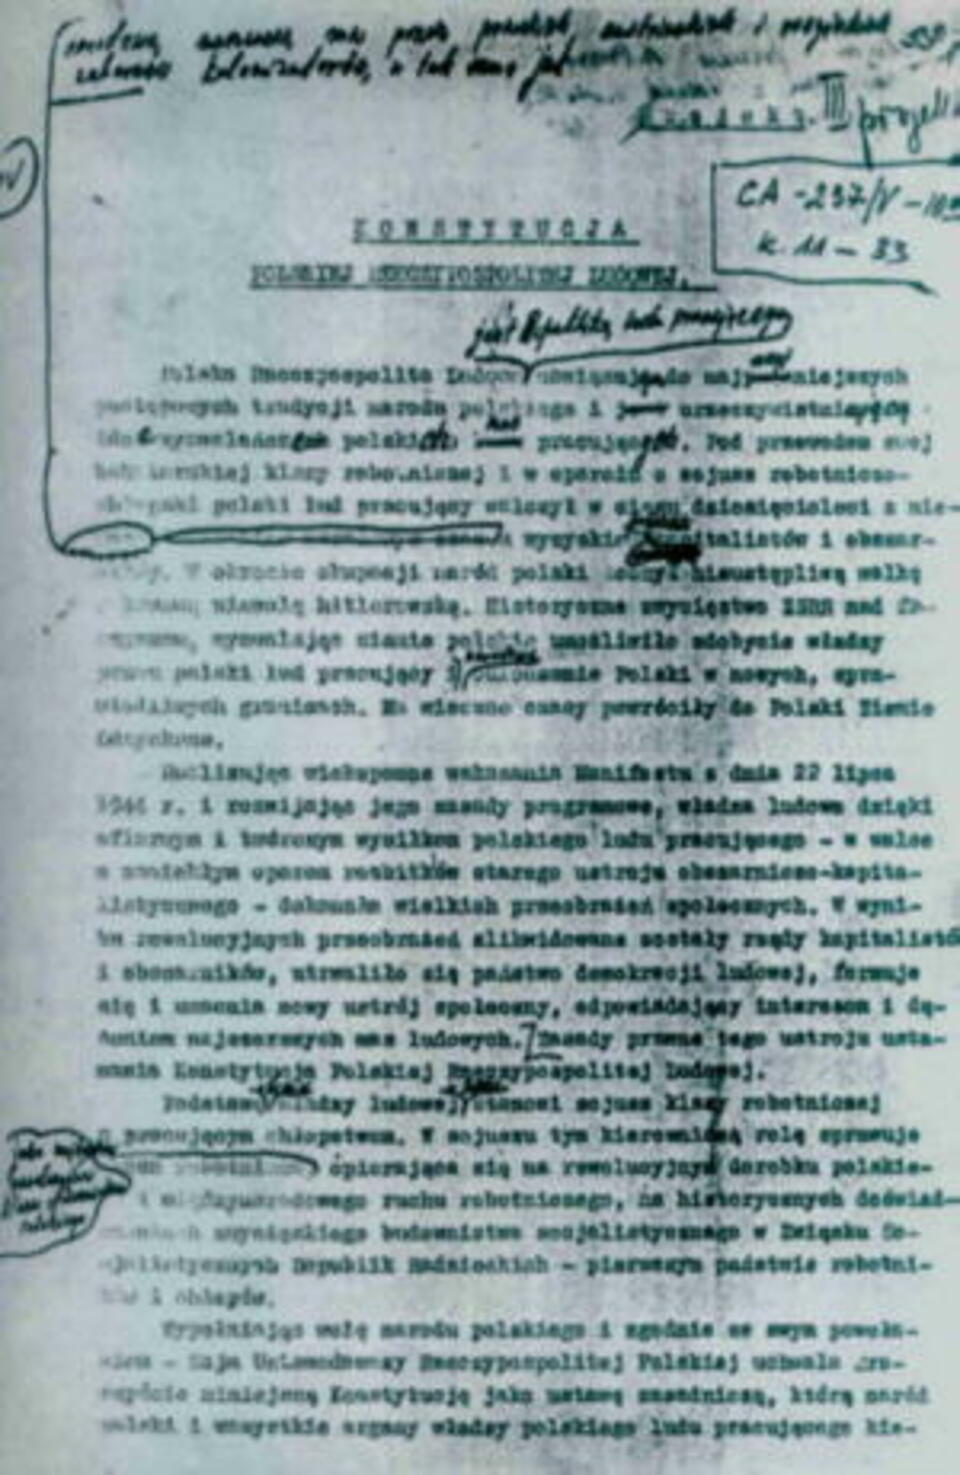 Konstytucja PRL z poprawkami Stalina naniesionymi przez Bieruta